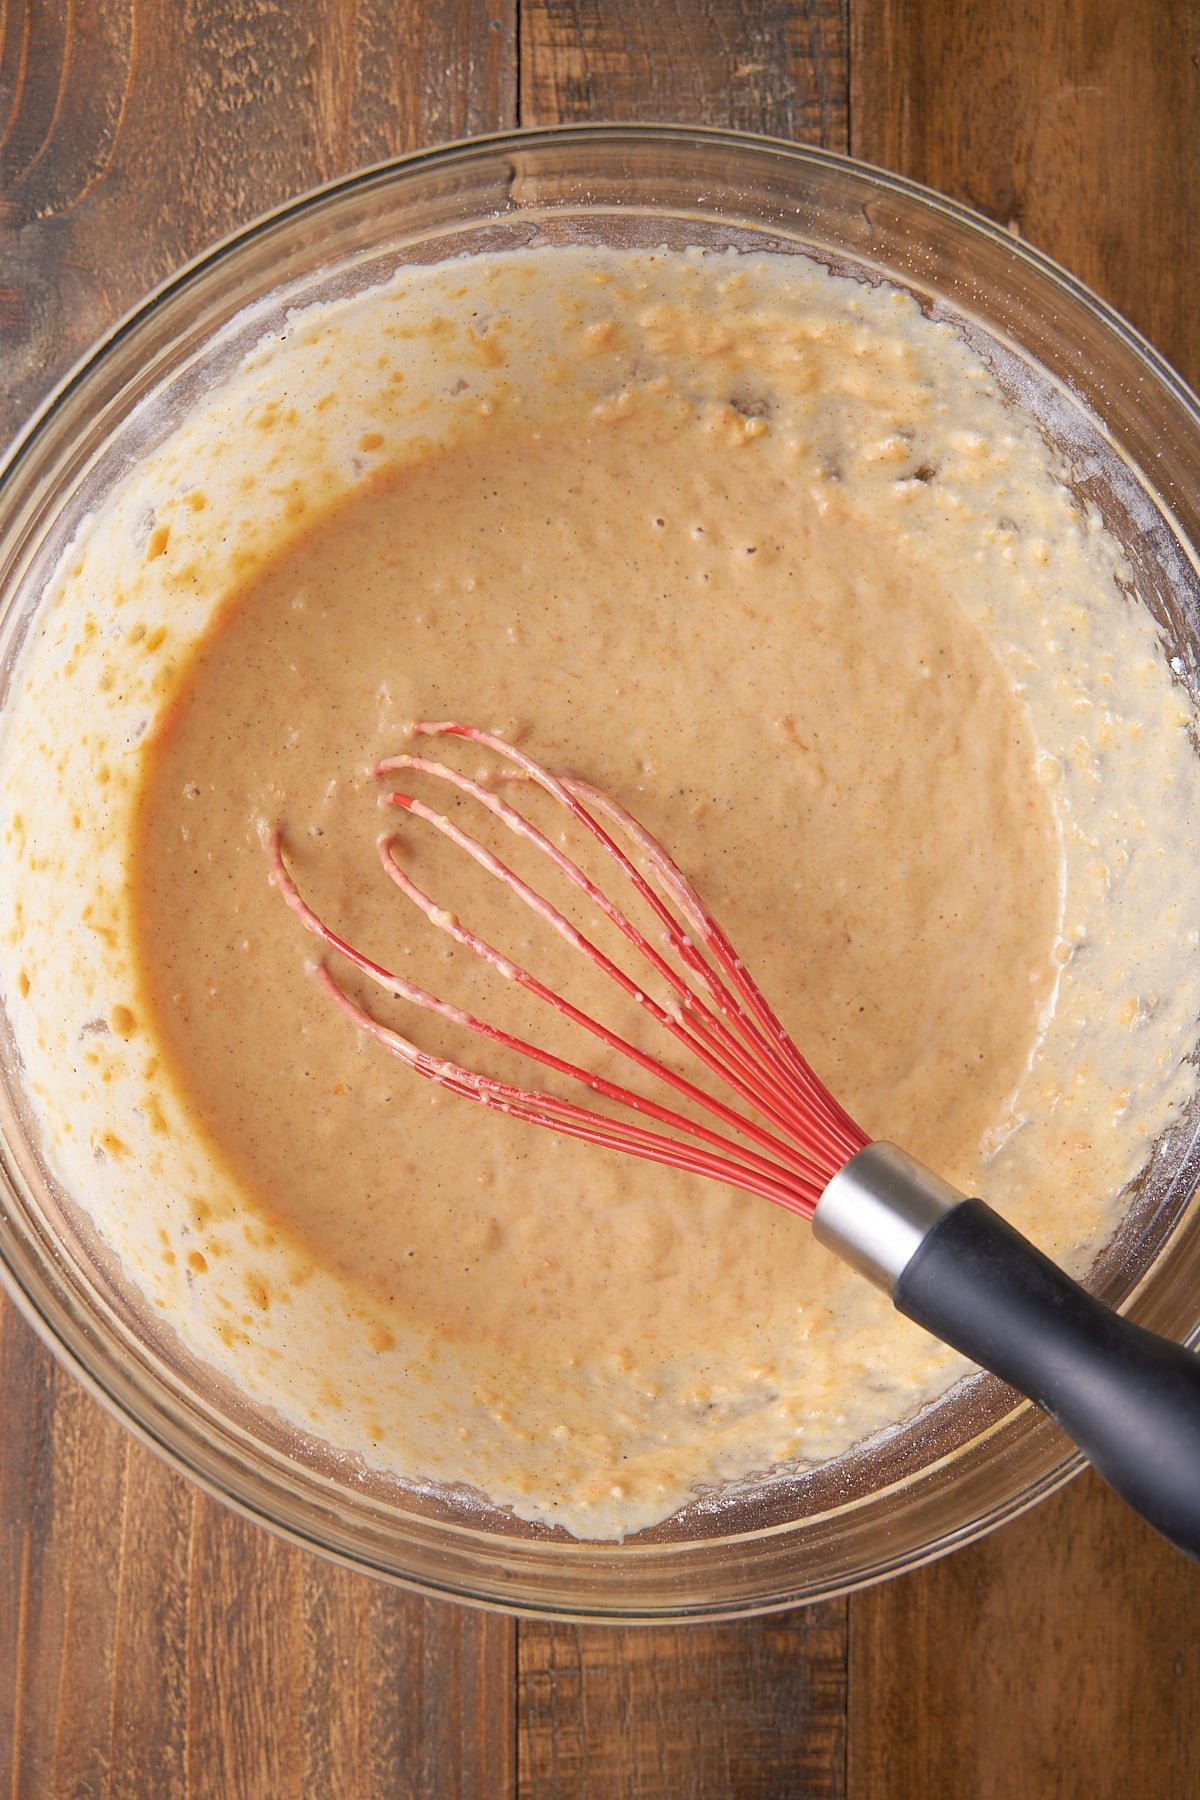 A large mixing bowl filled with sweet potato pancake batter.